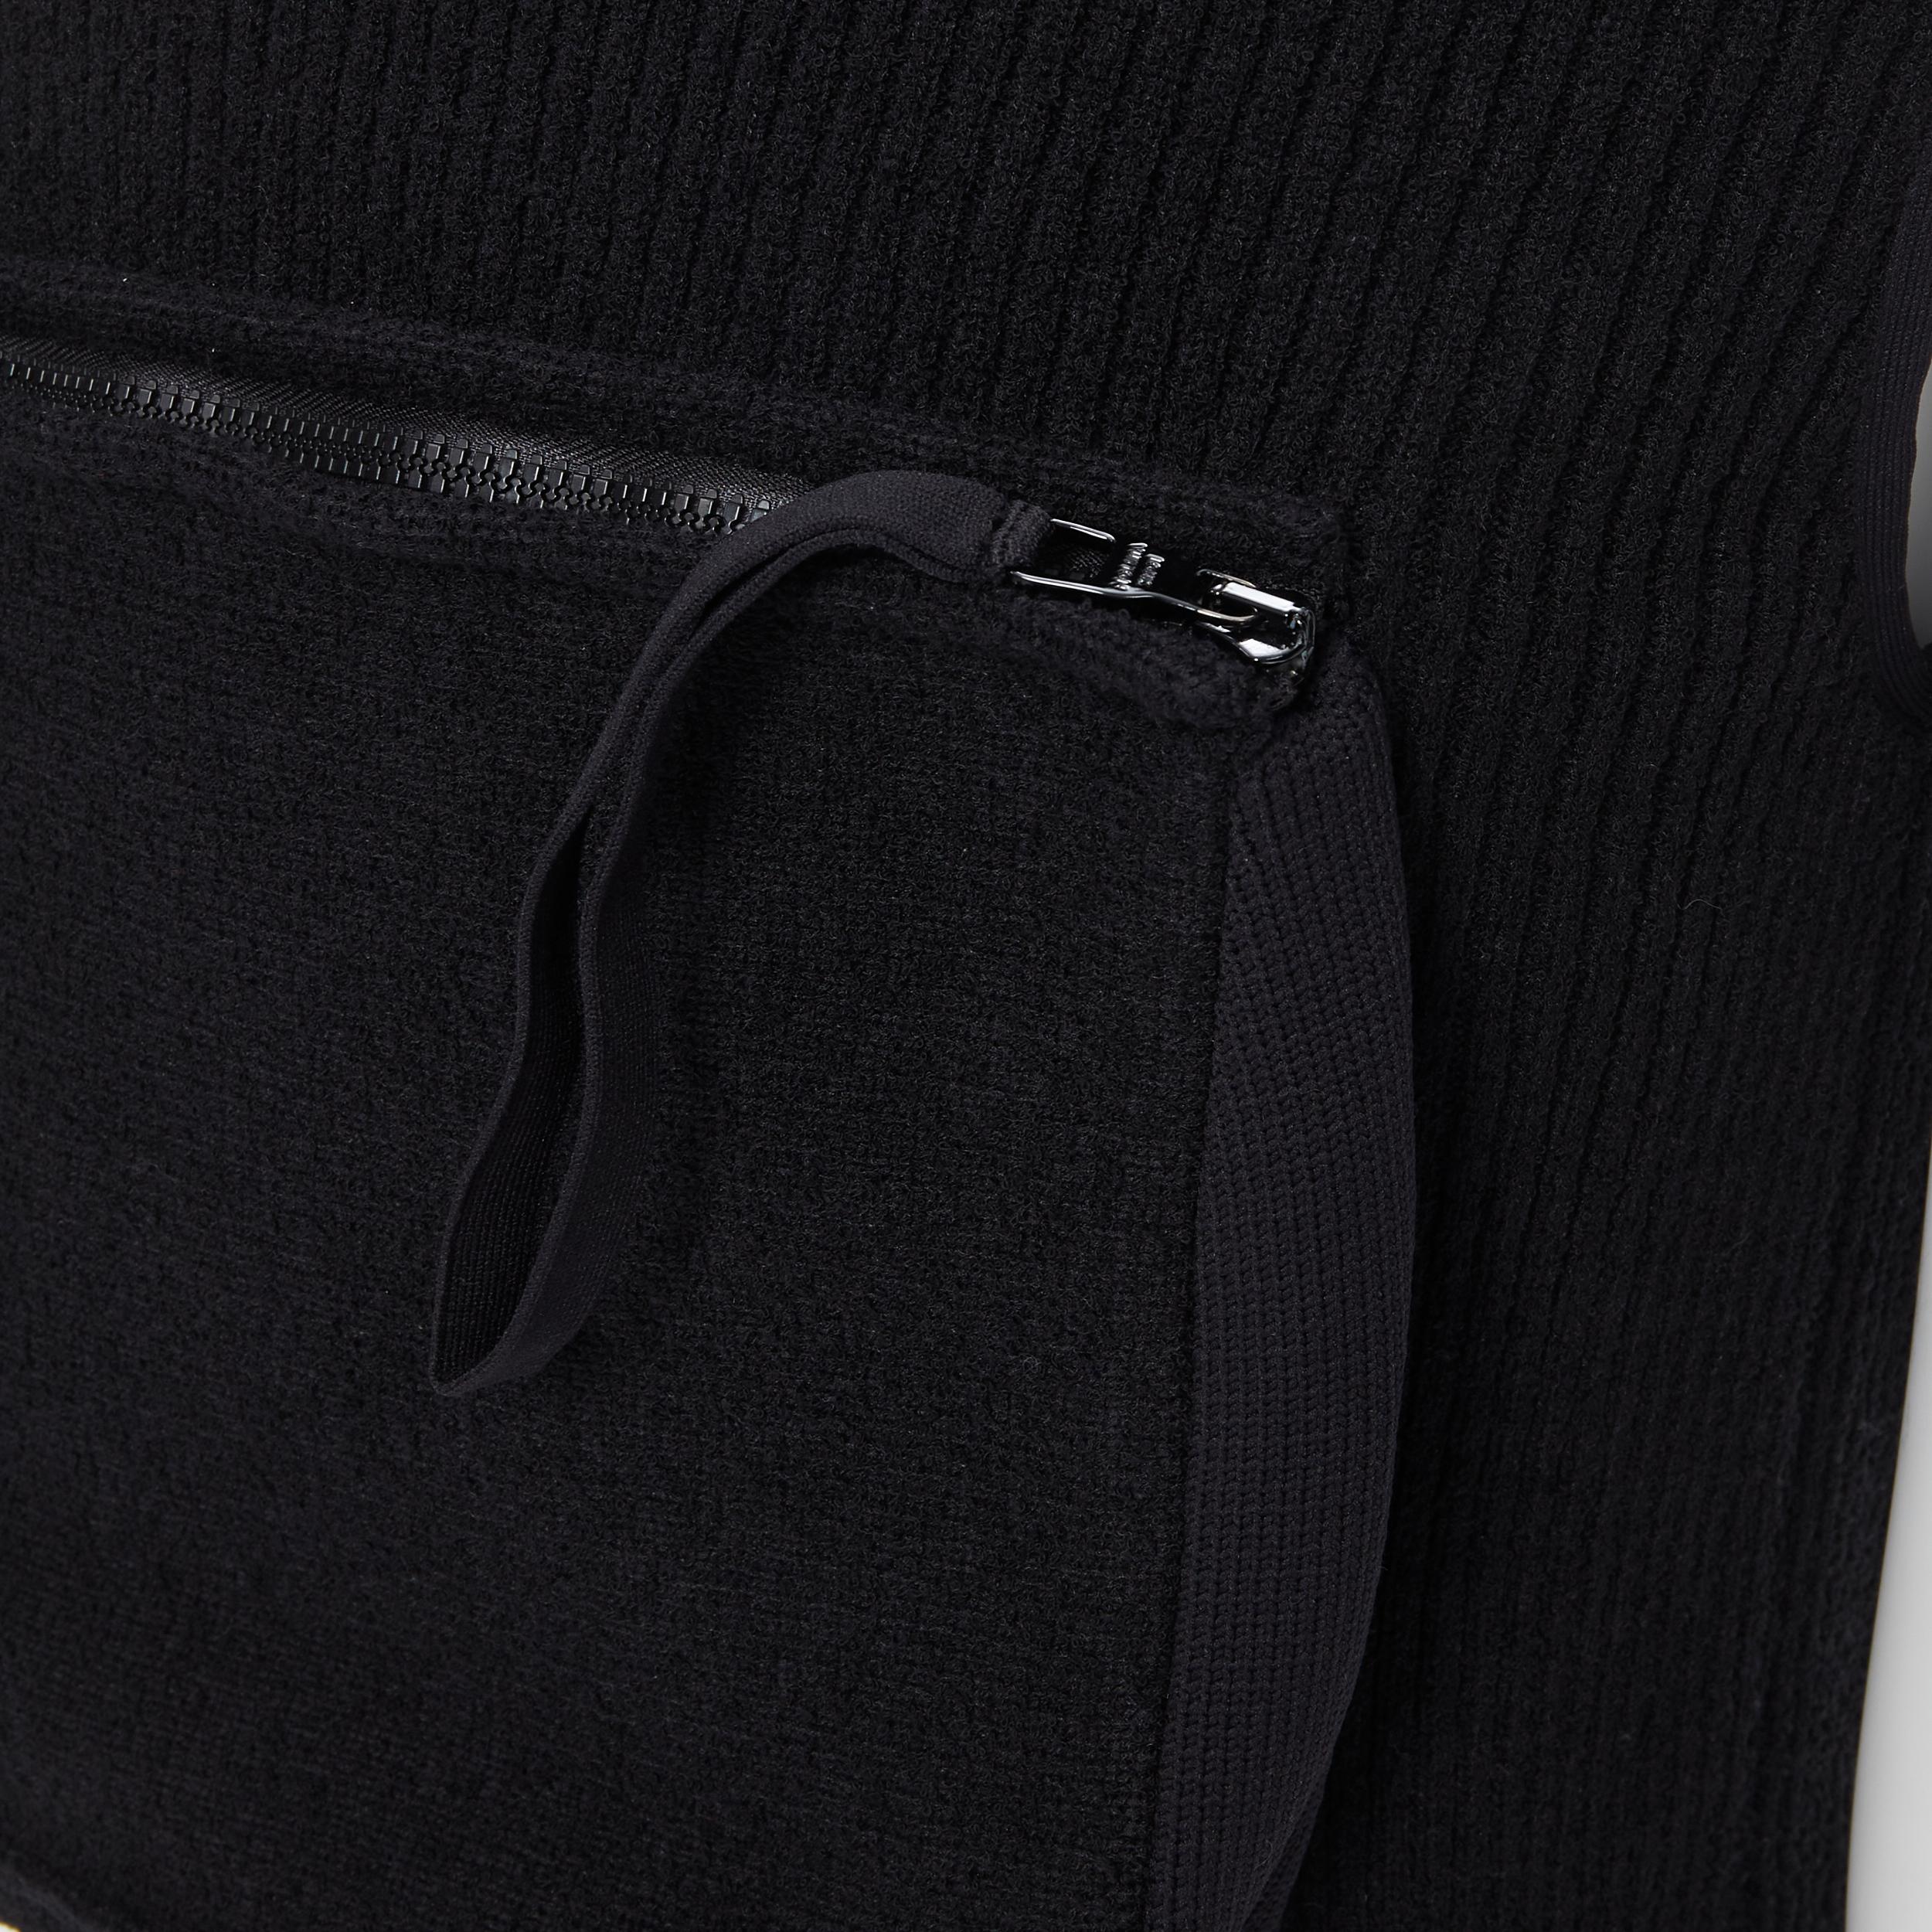 LOUS VUITTON Virgil Abloh Multi 3D Pocket utility zip pocket ribbed zip vest M 1